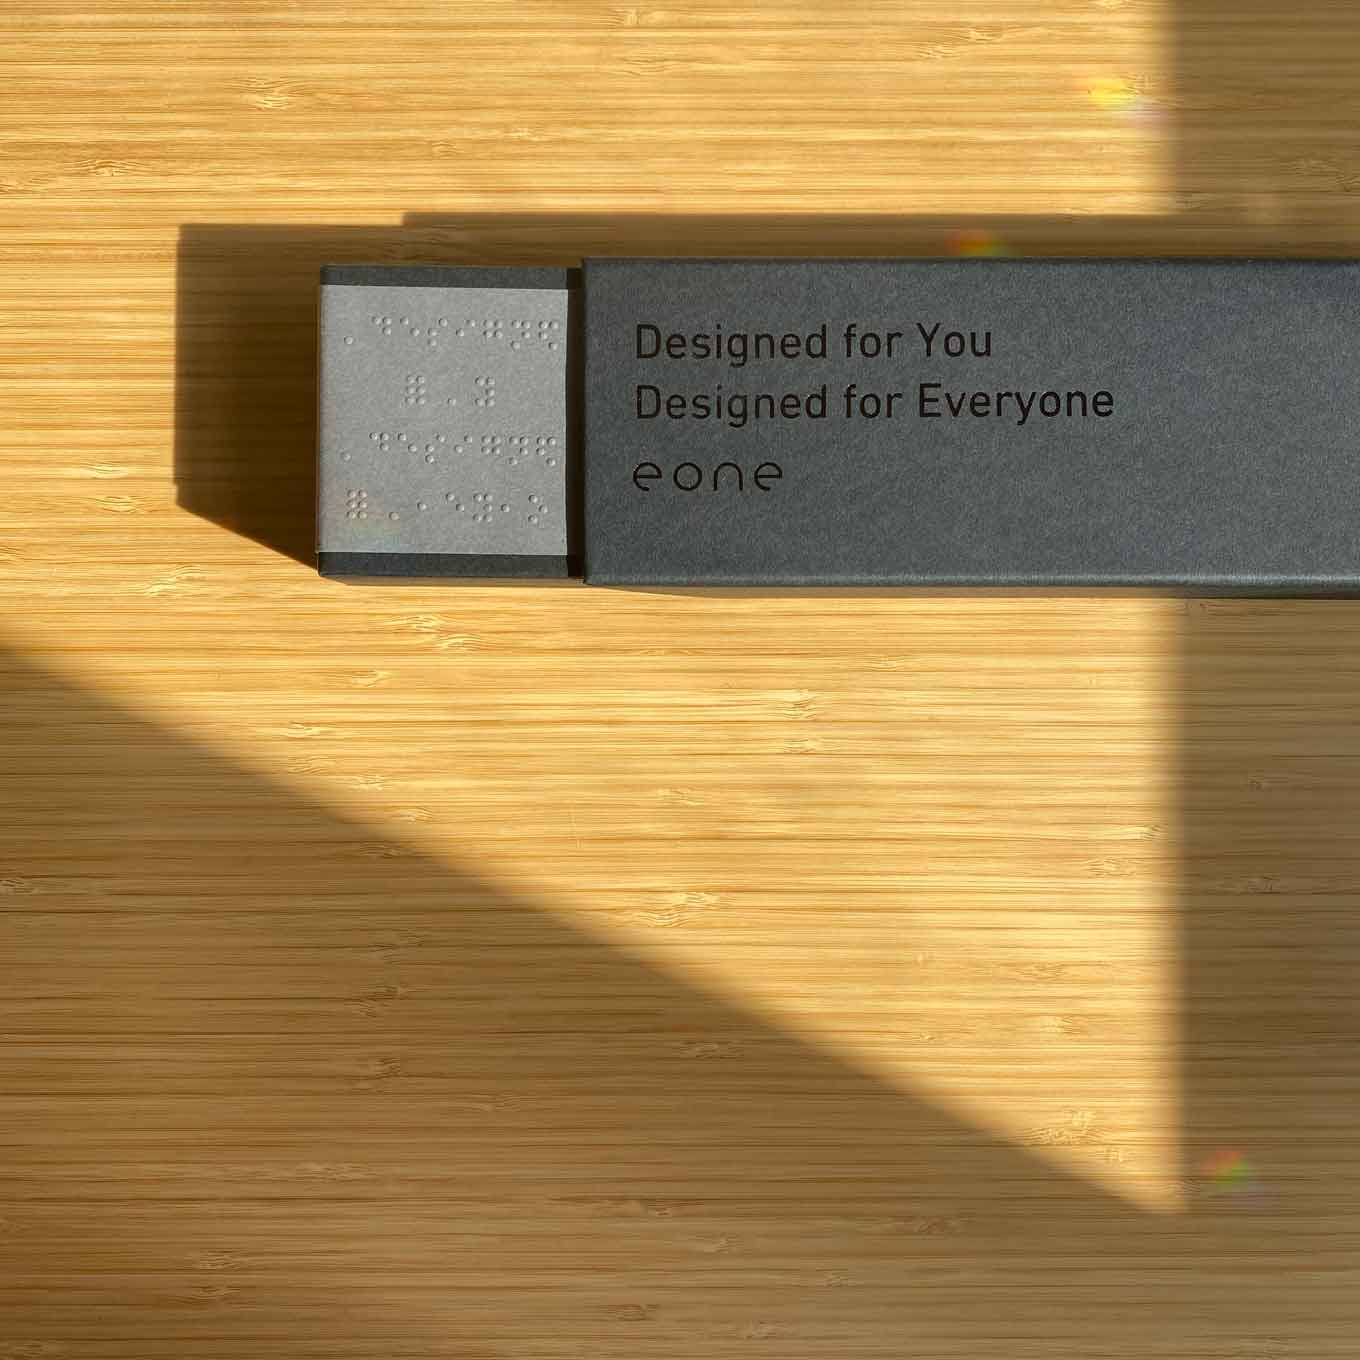 Verpakking die zegt "Ontworpen voor u. Ontworpen voor iedereen. Eone" in braille